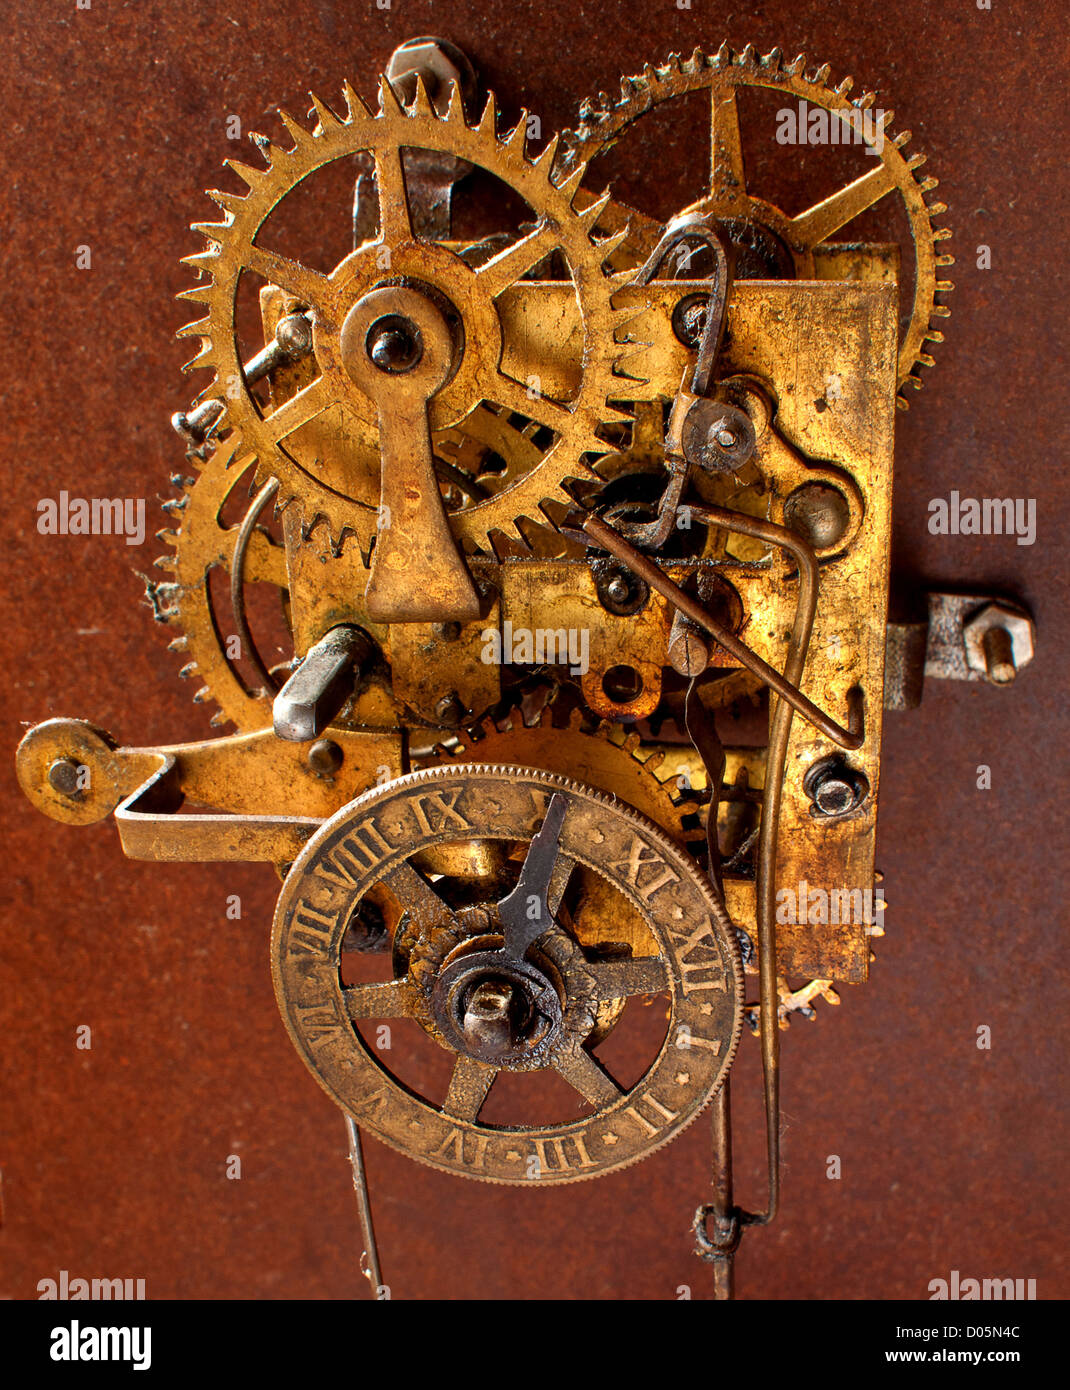 Vieille horloge à pendule fonctionnement avec chiffres romains Banque D'Images